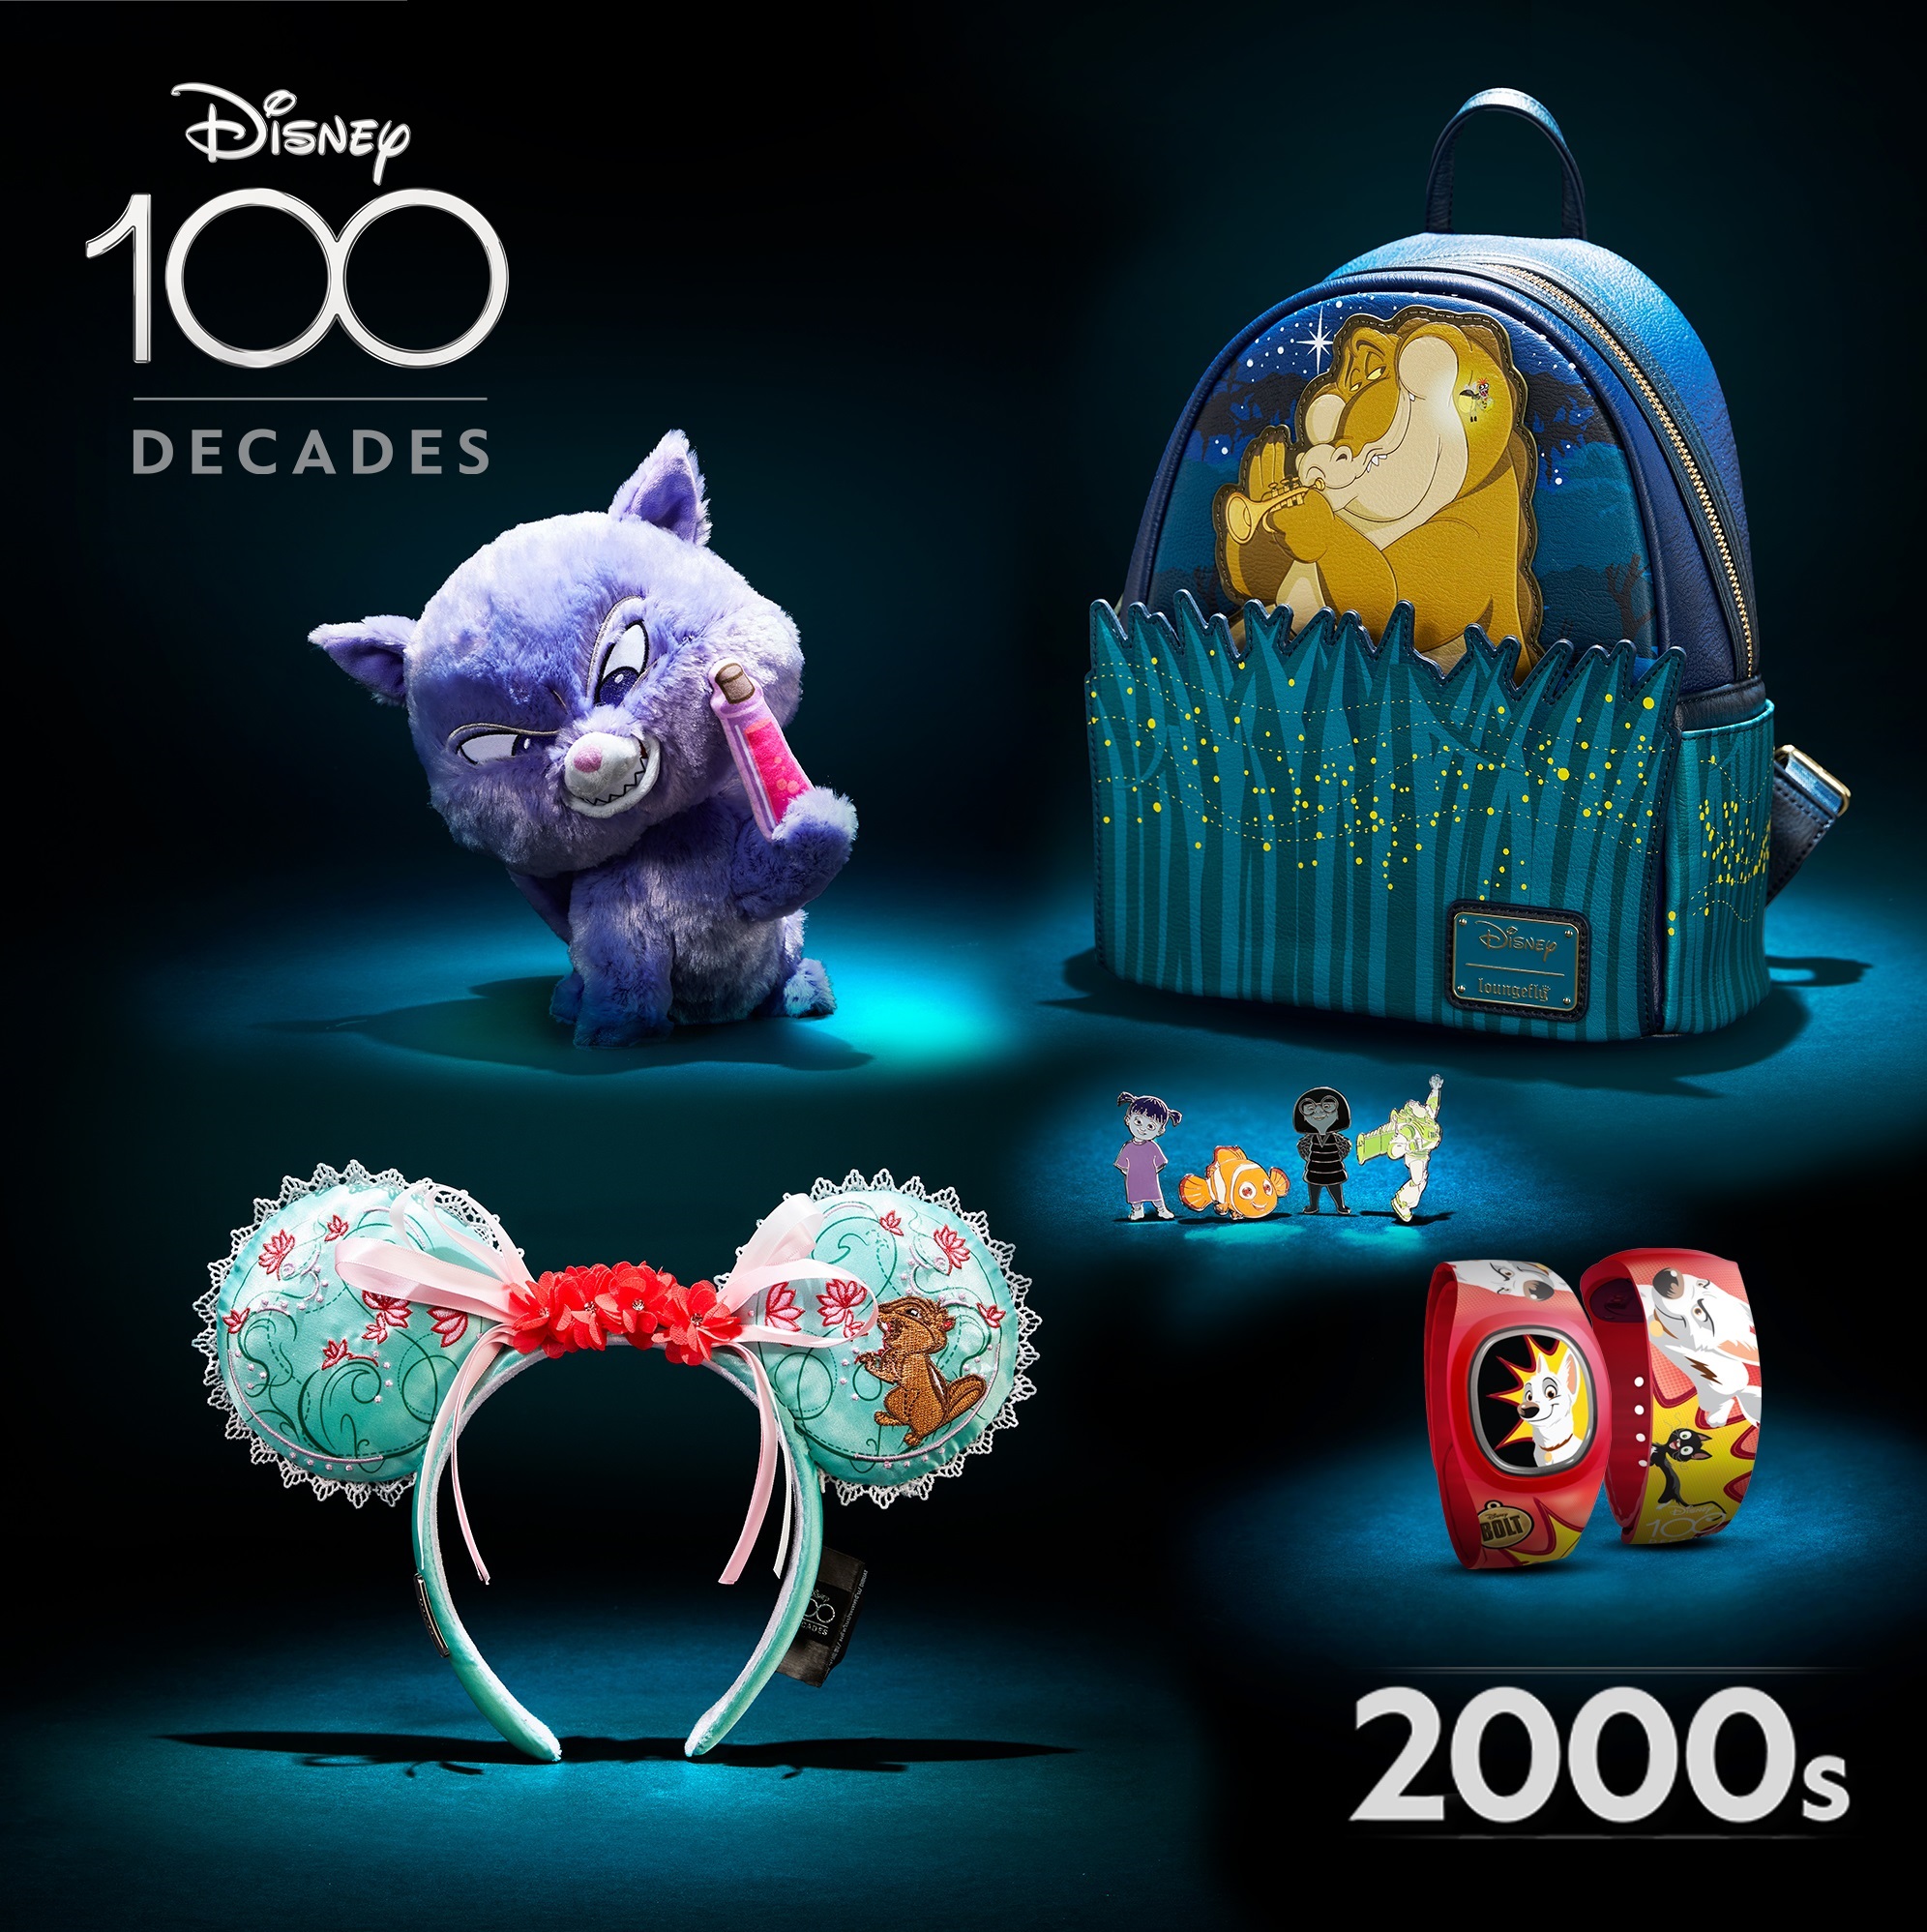 Petite peluche Tic et Tac Disney100 Celebration